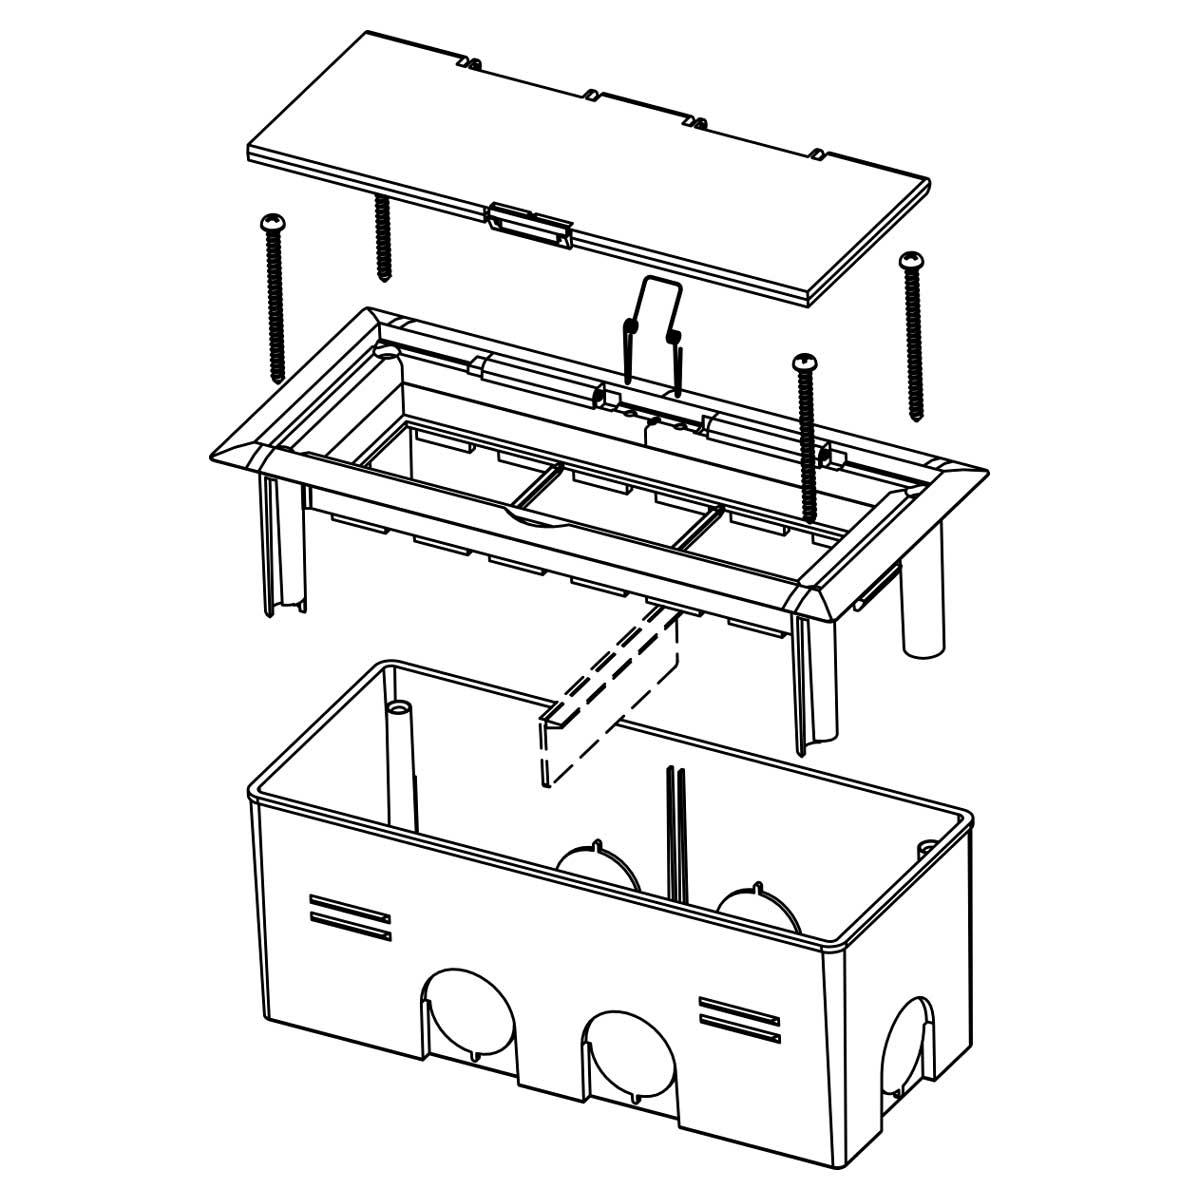 Коробка для приладів в тверді стіни або підлогу; біла; 176х80x68 мм. KOPOBOX MINI B_HB